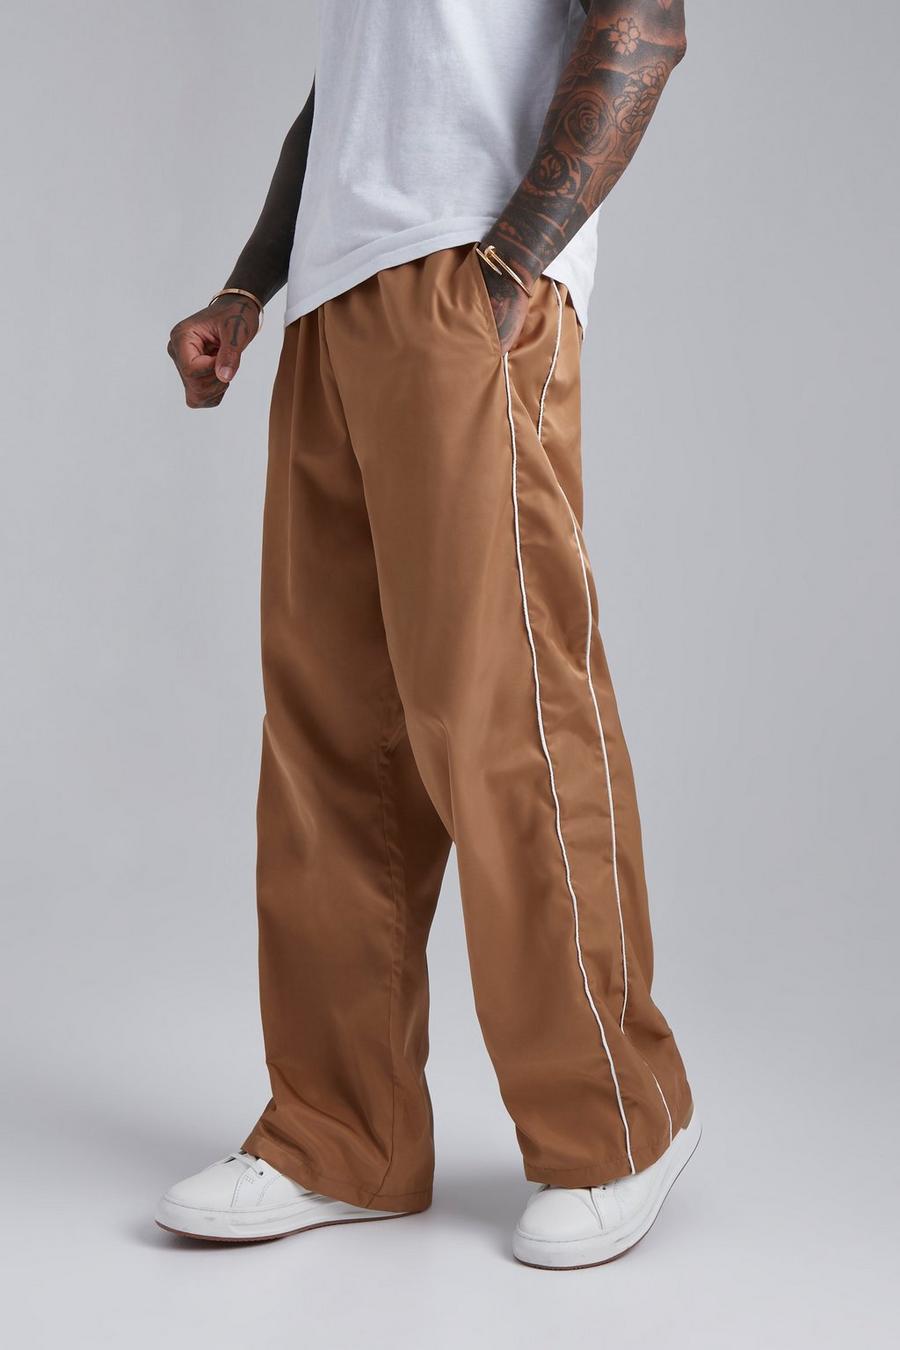 Pantaloni Smart ampi con laccetti, Tobacco marrone